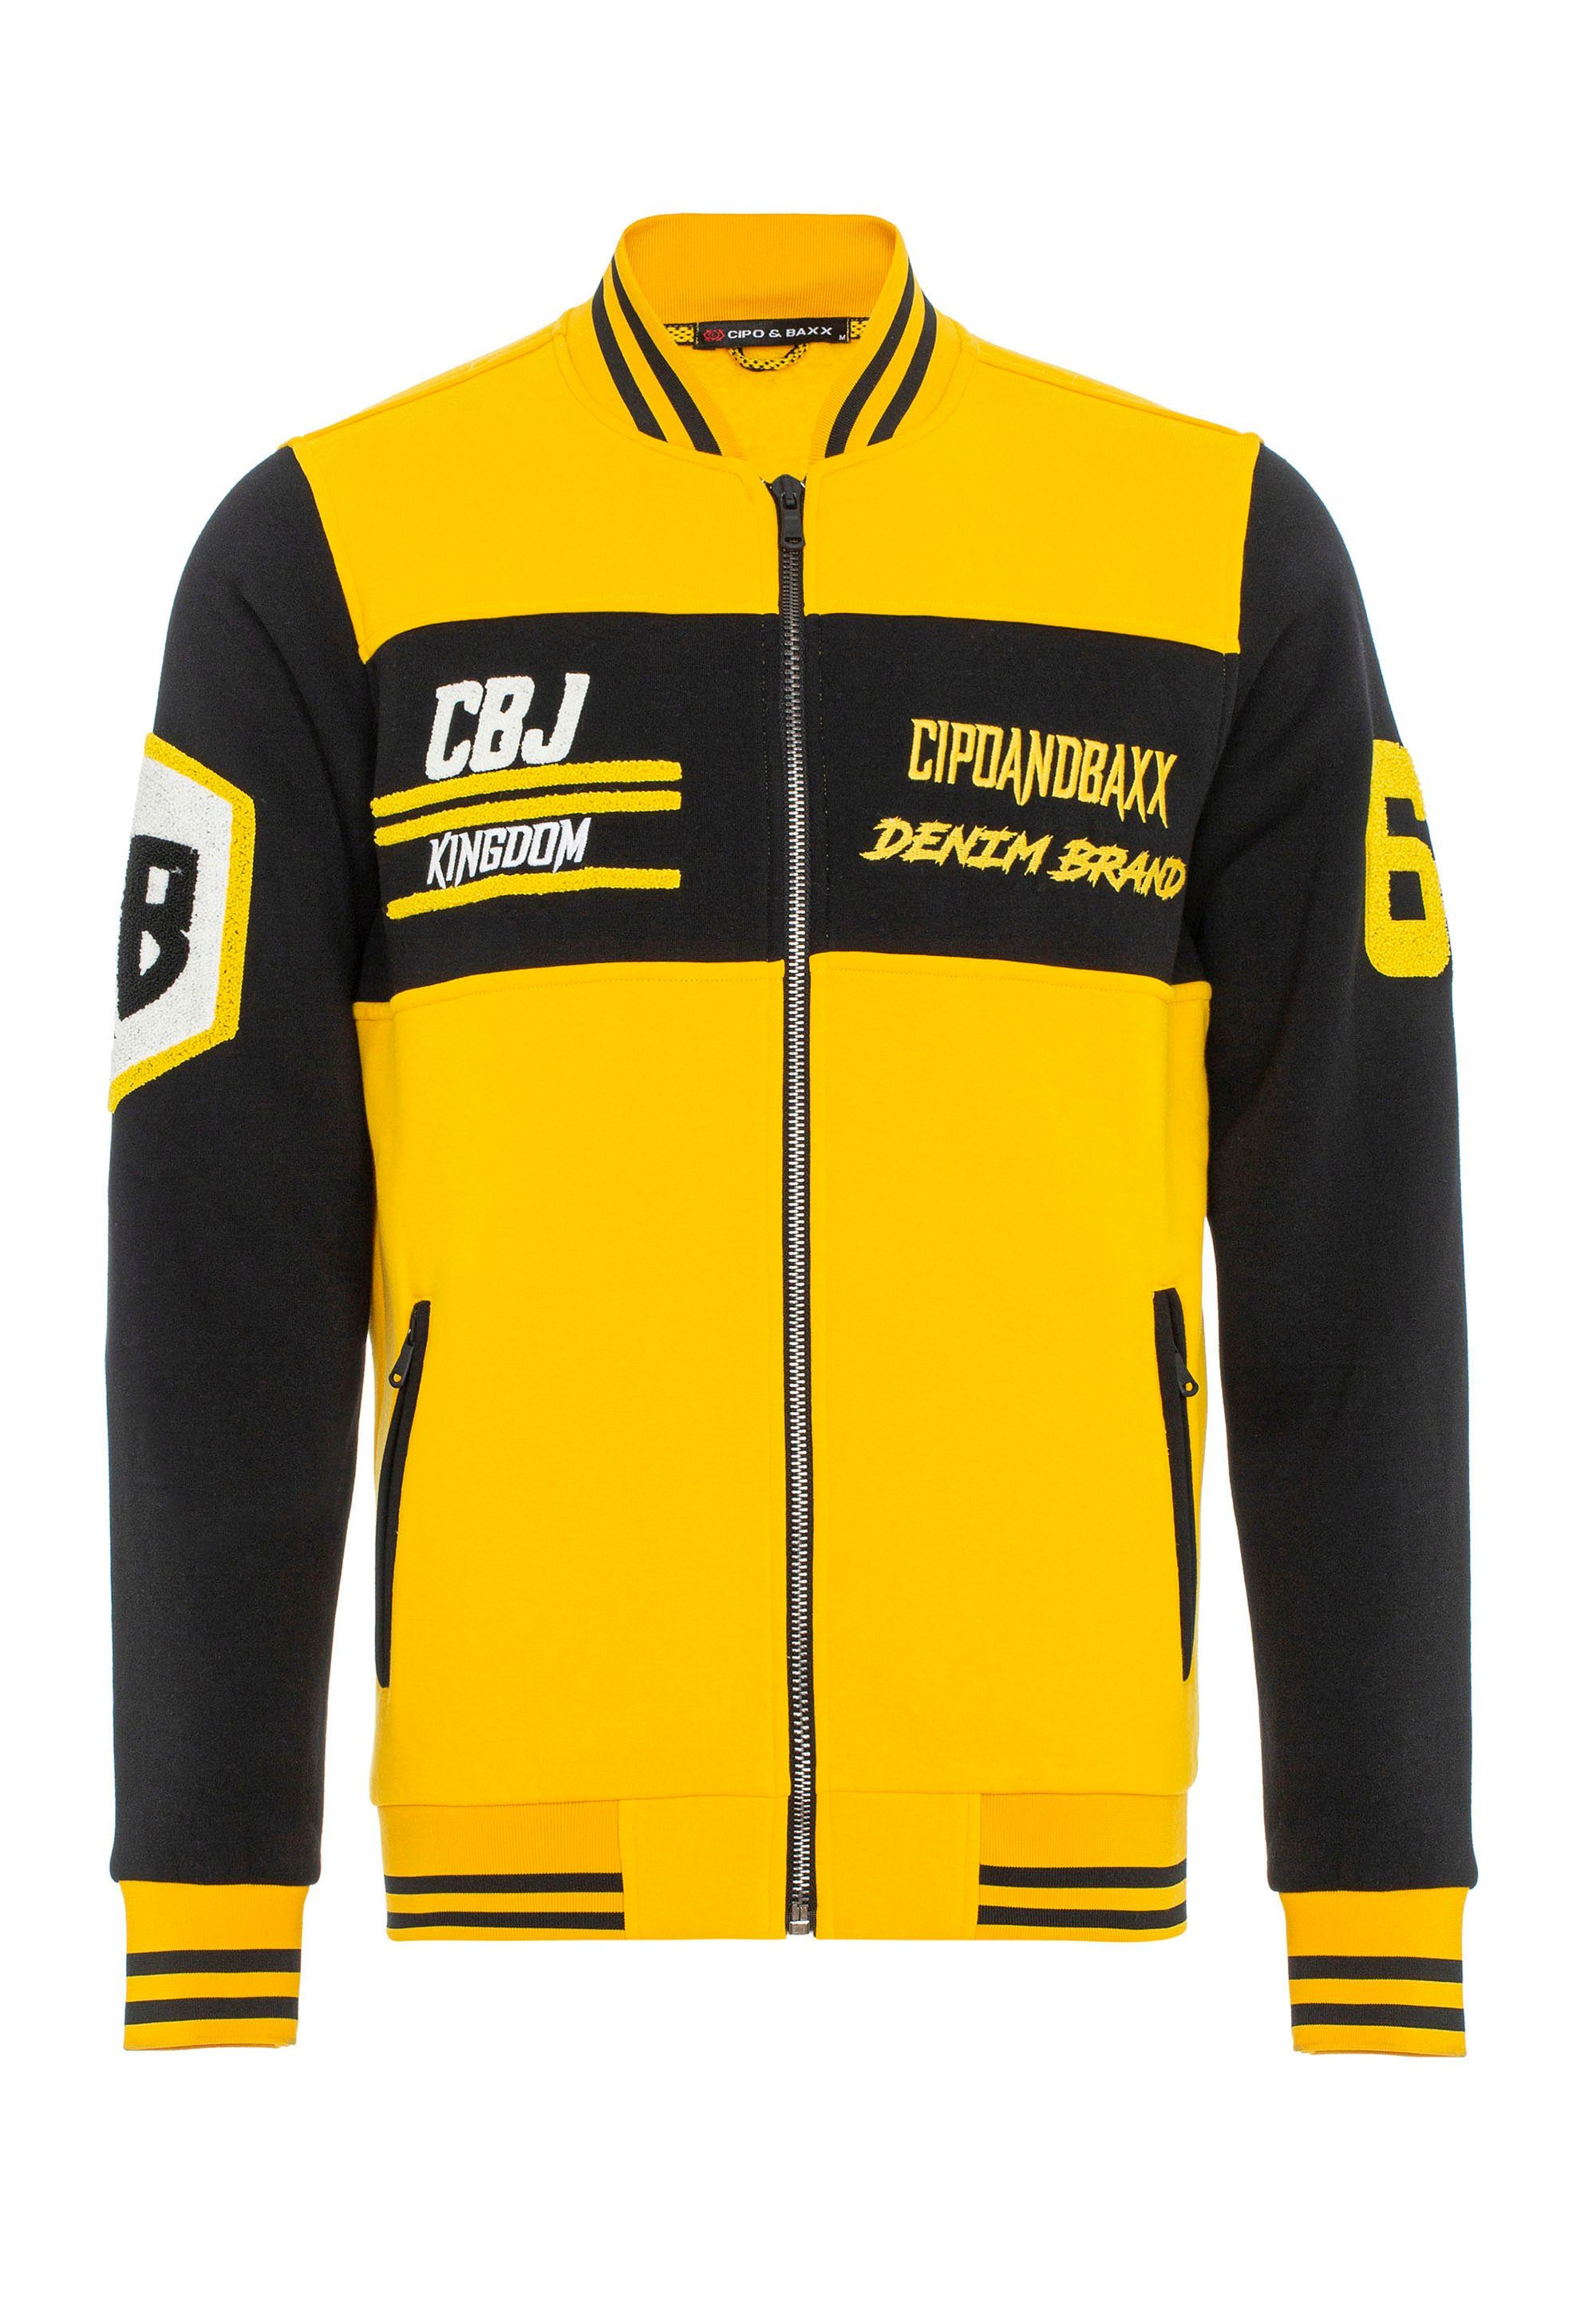 gelb-schwarz Baxx sportlichem Cipo & Sweatjacke Design in